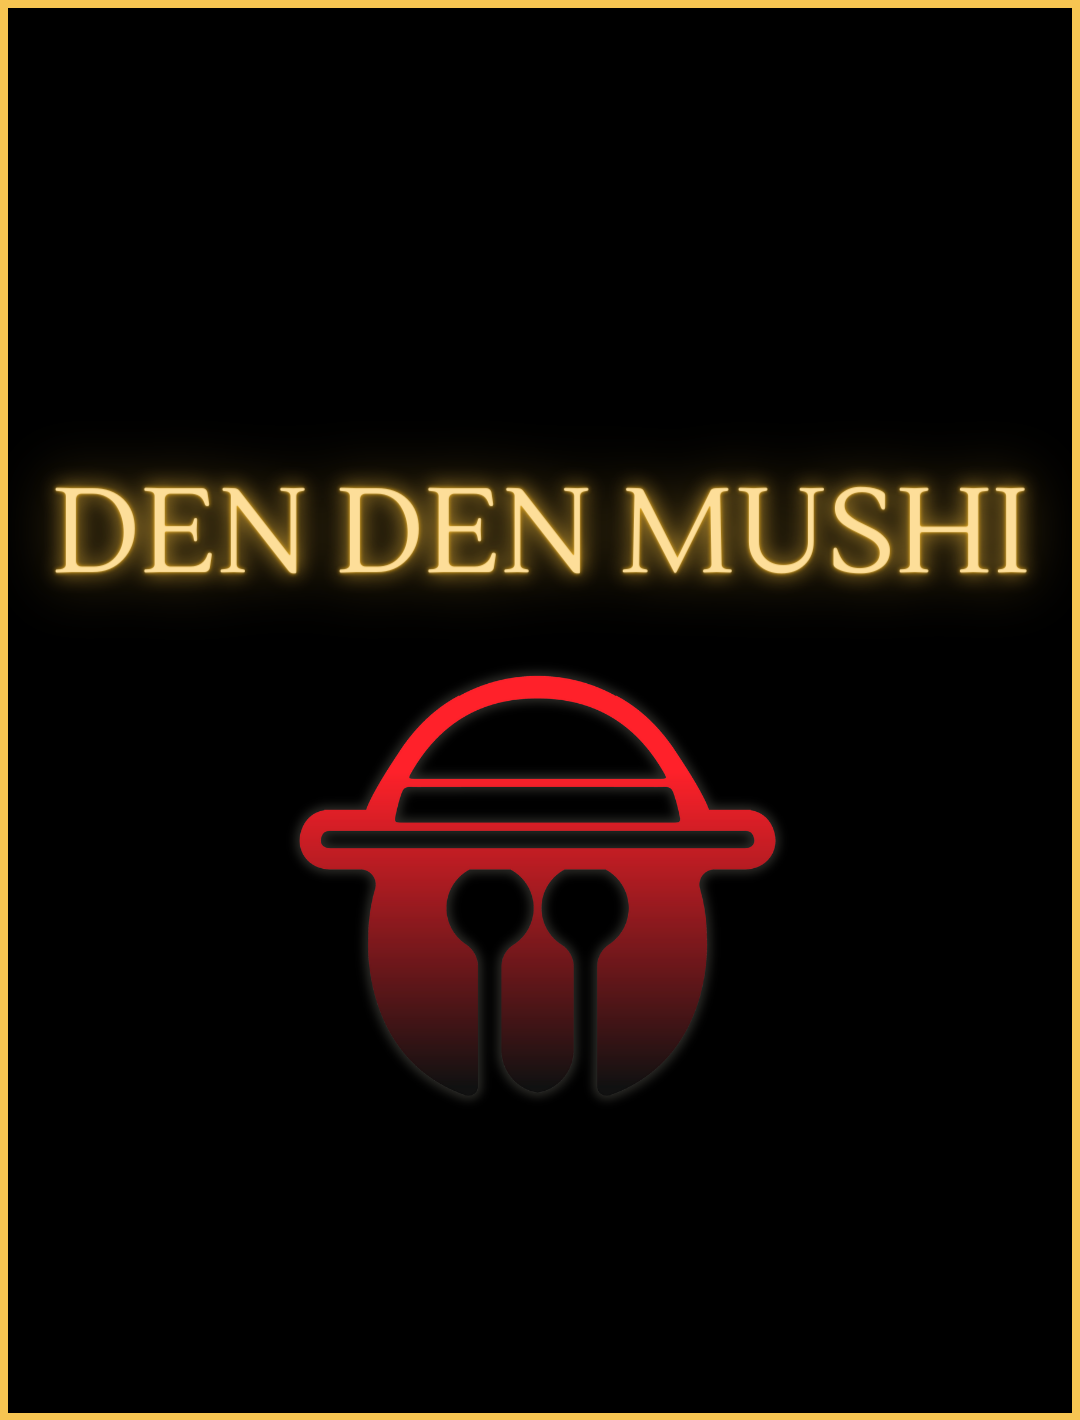 El mushi